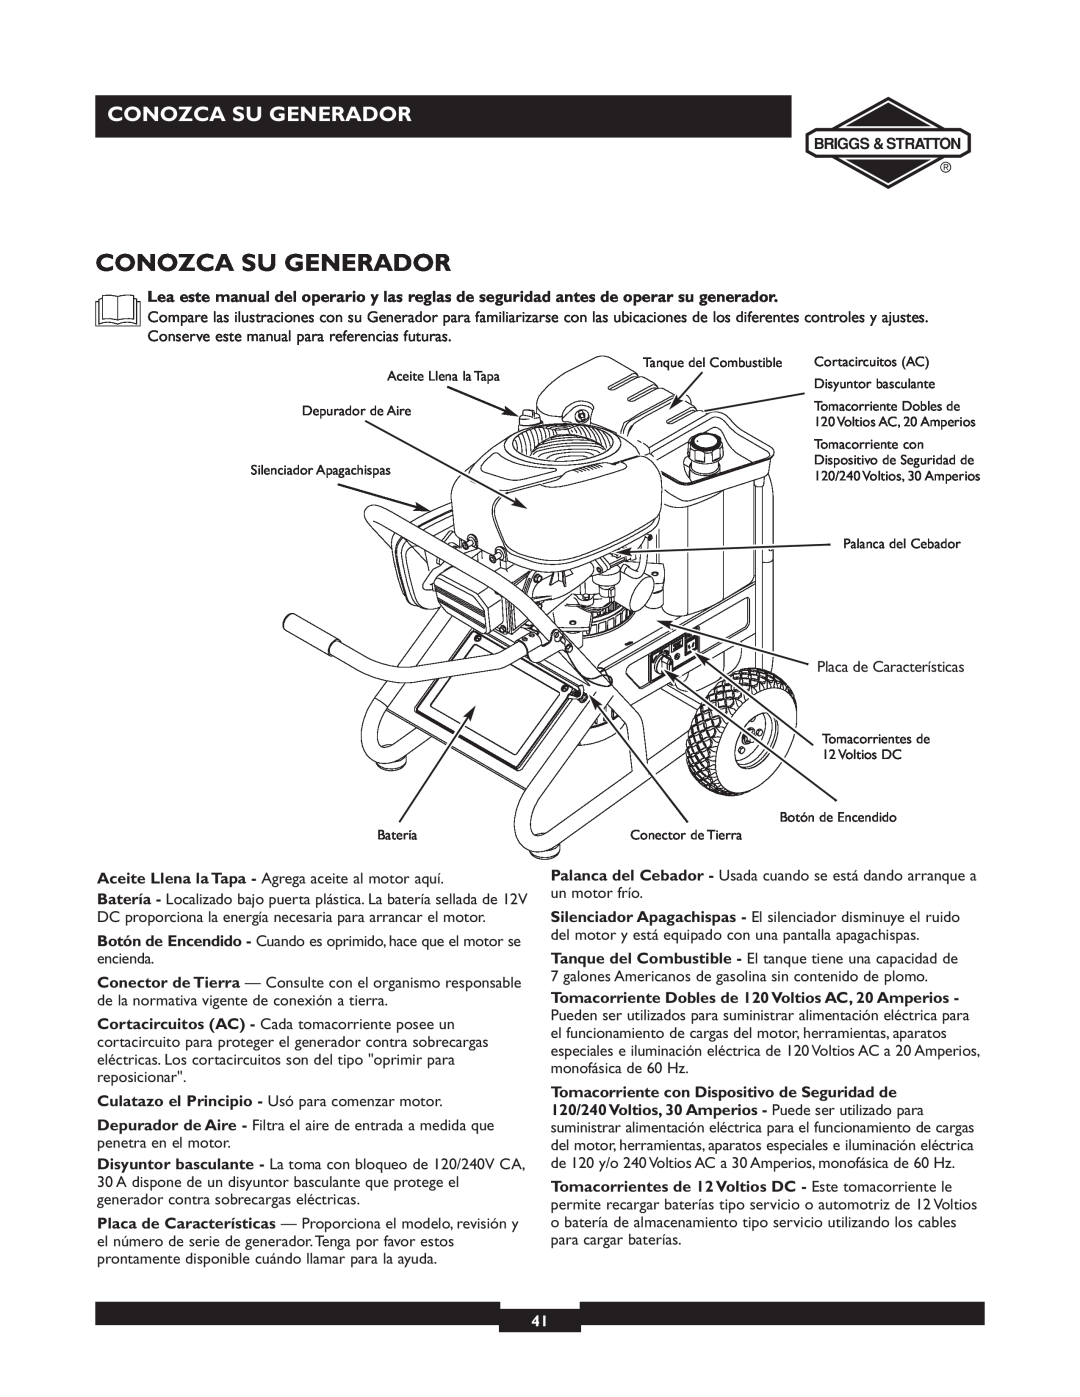 Briggs & Stratton 01894-1 manual Conozca Su Generador, Culatazo el Principio - Usó para comenzar motor 